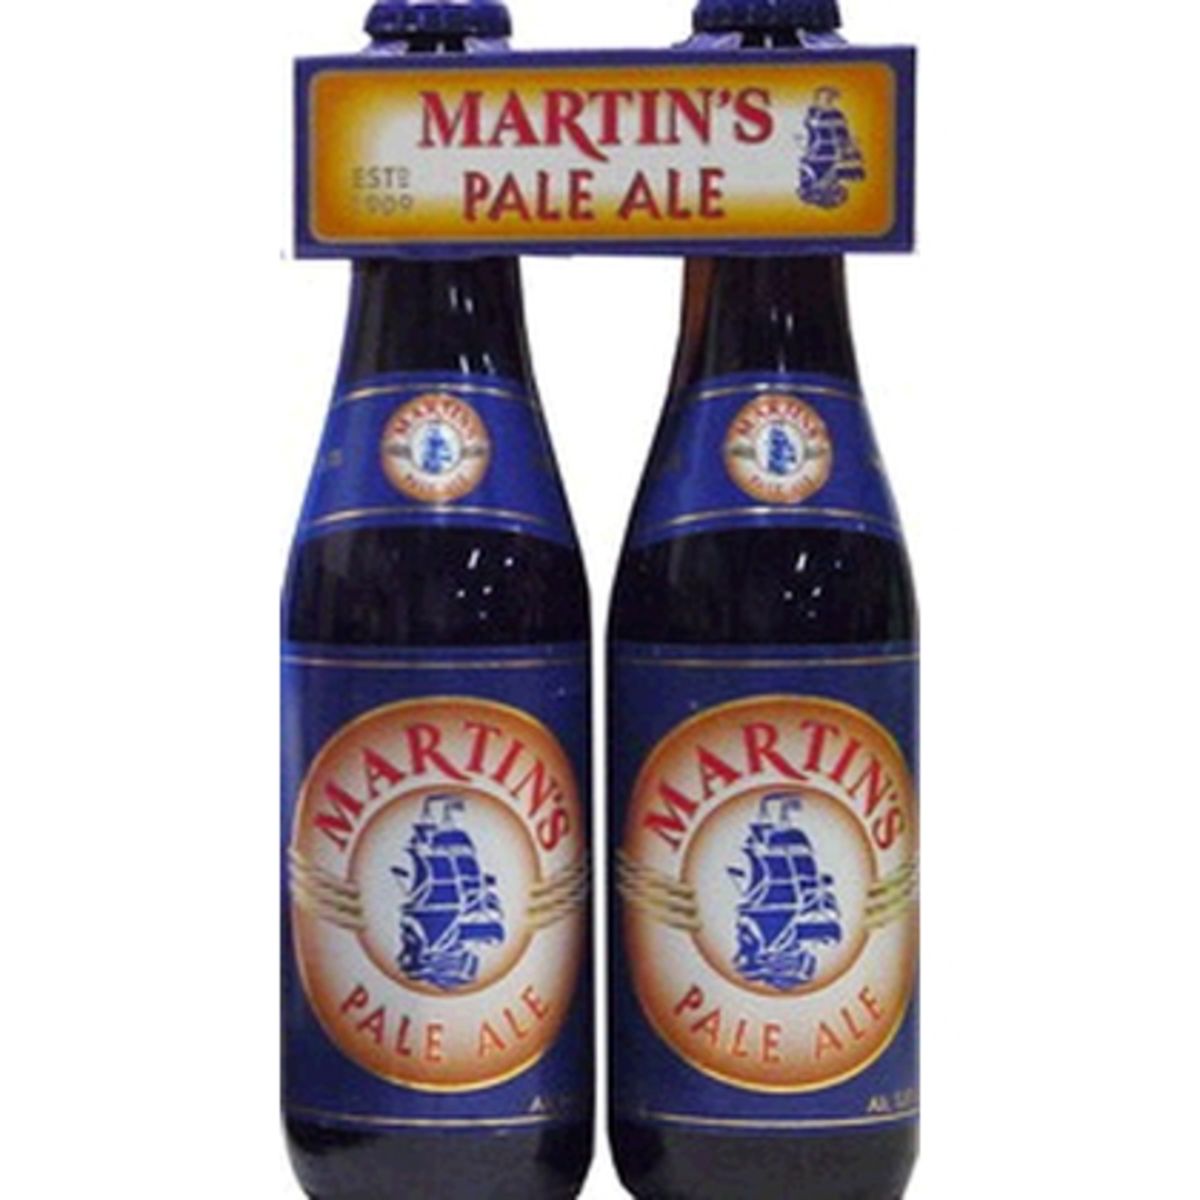 Martin's pale ale